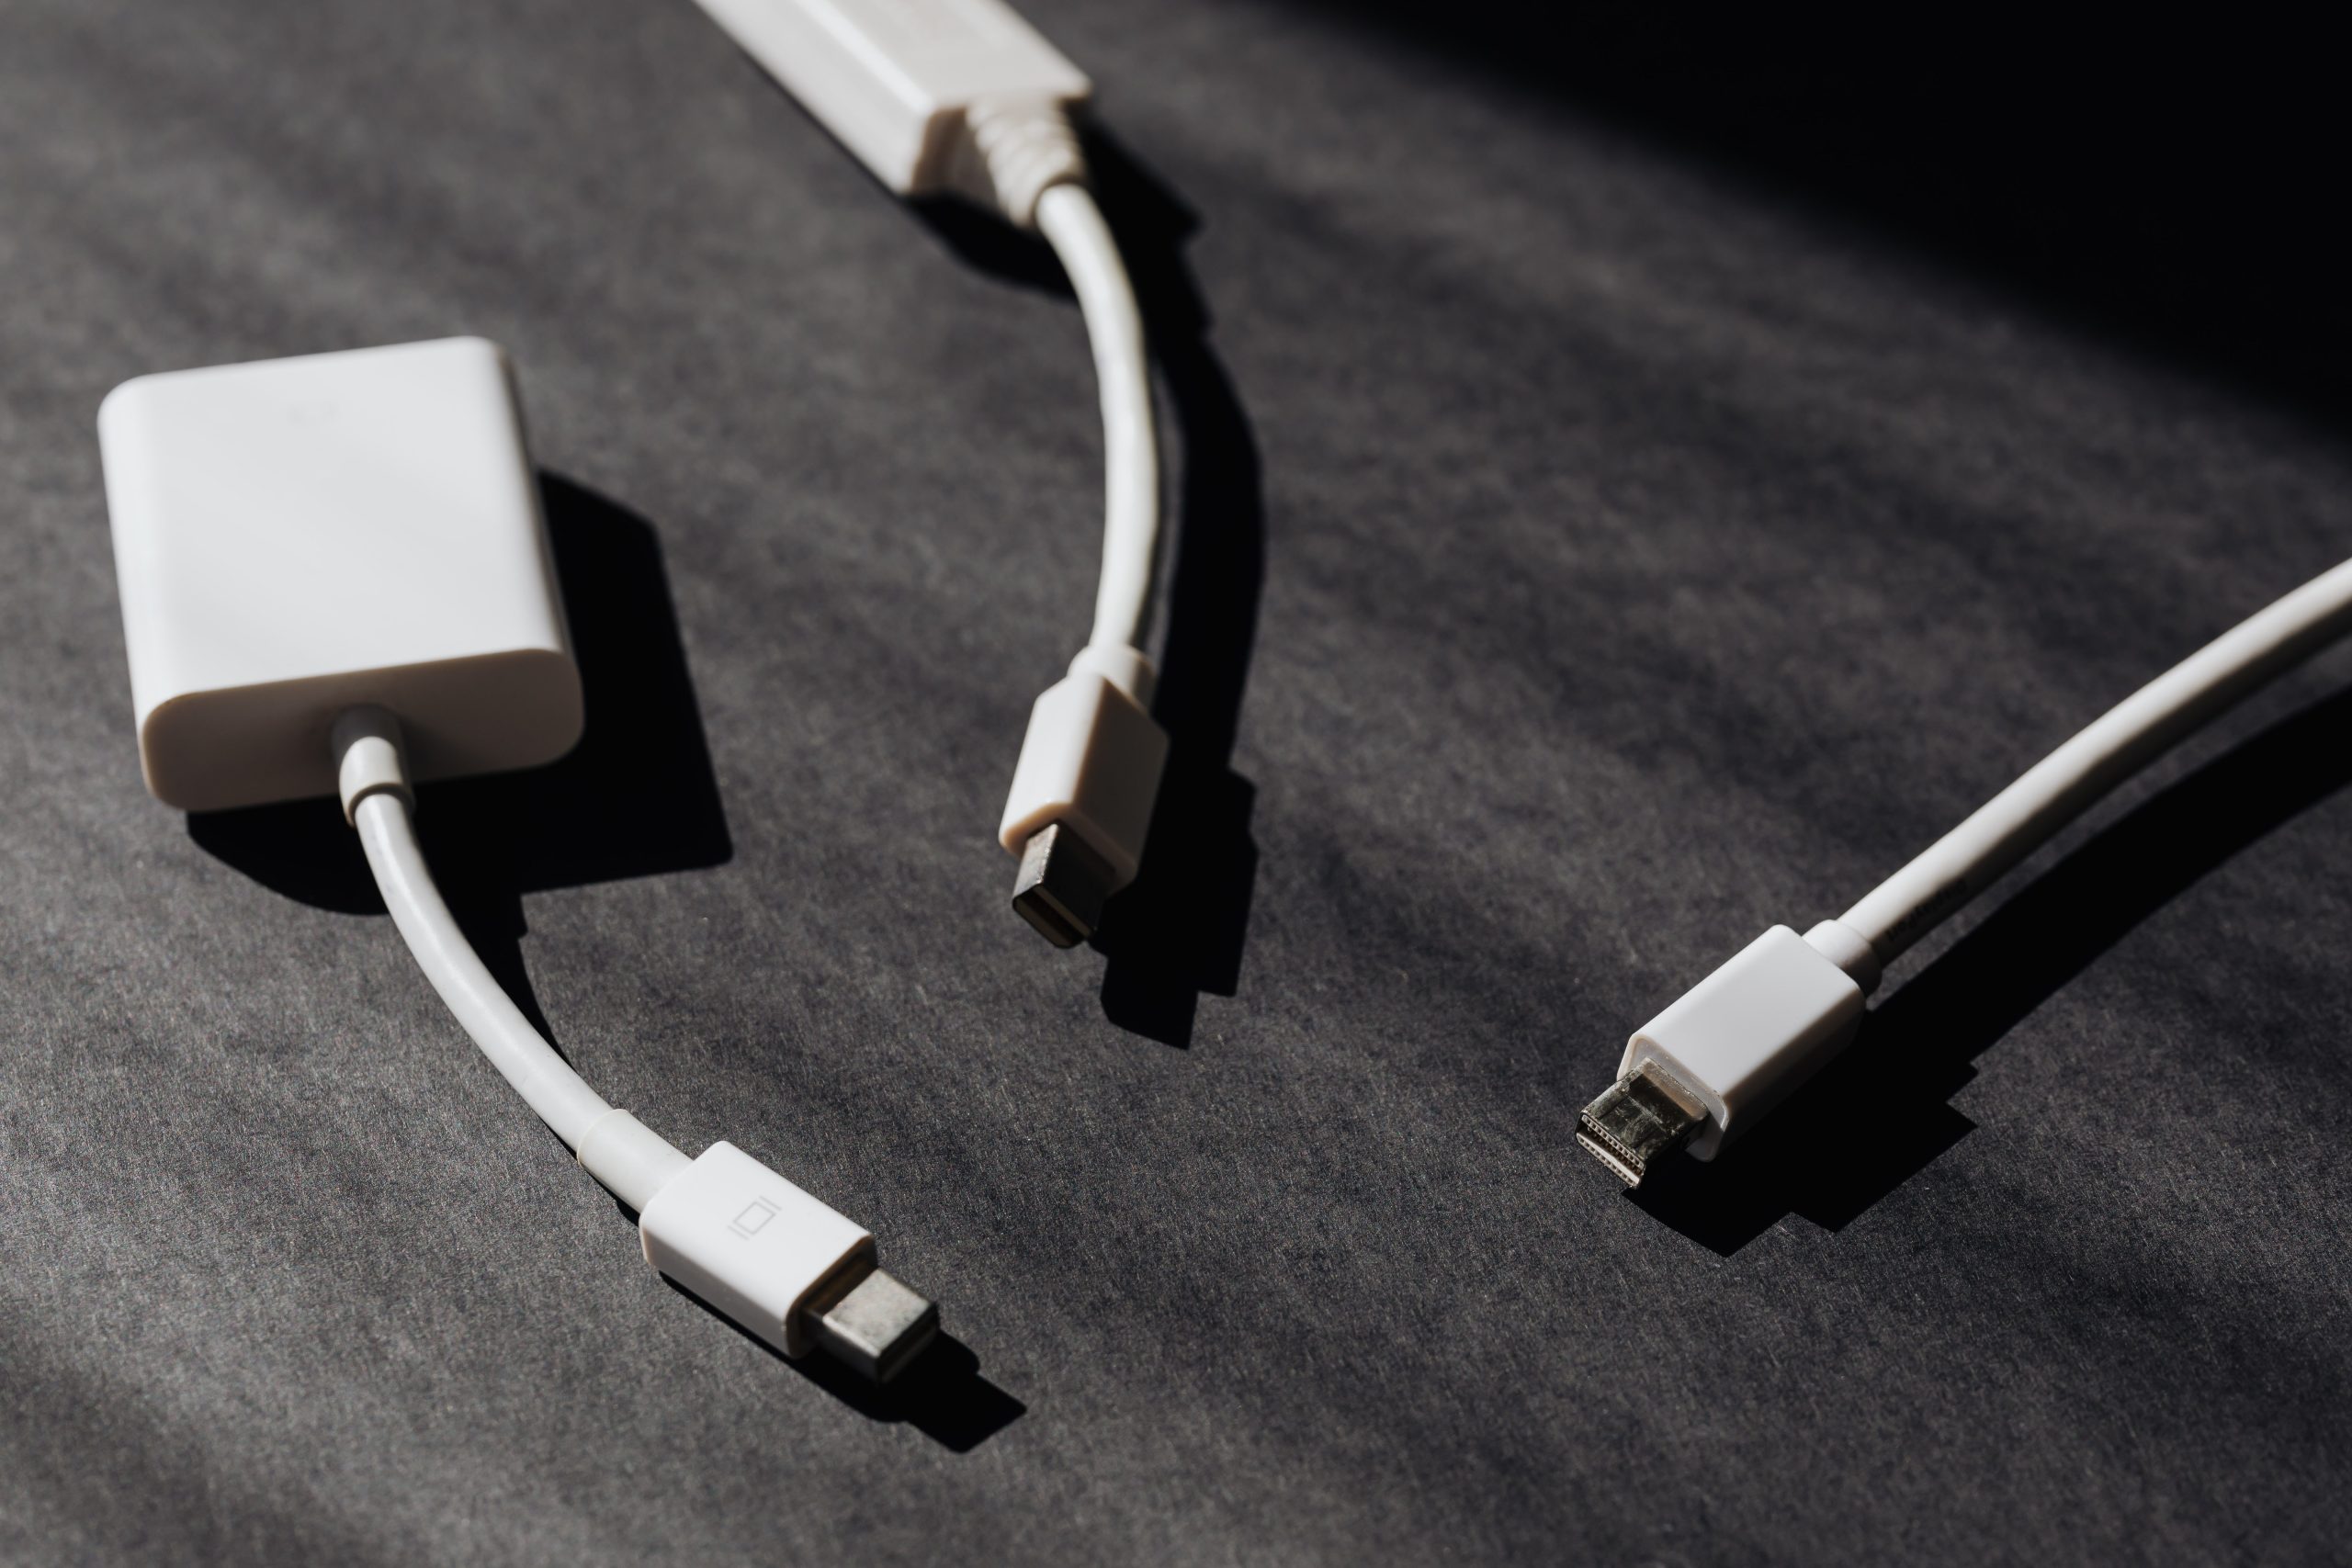 USB-C станет общим зарядным портом для всех телефонов, планшетов, камер и других гаджетов в Европе